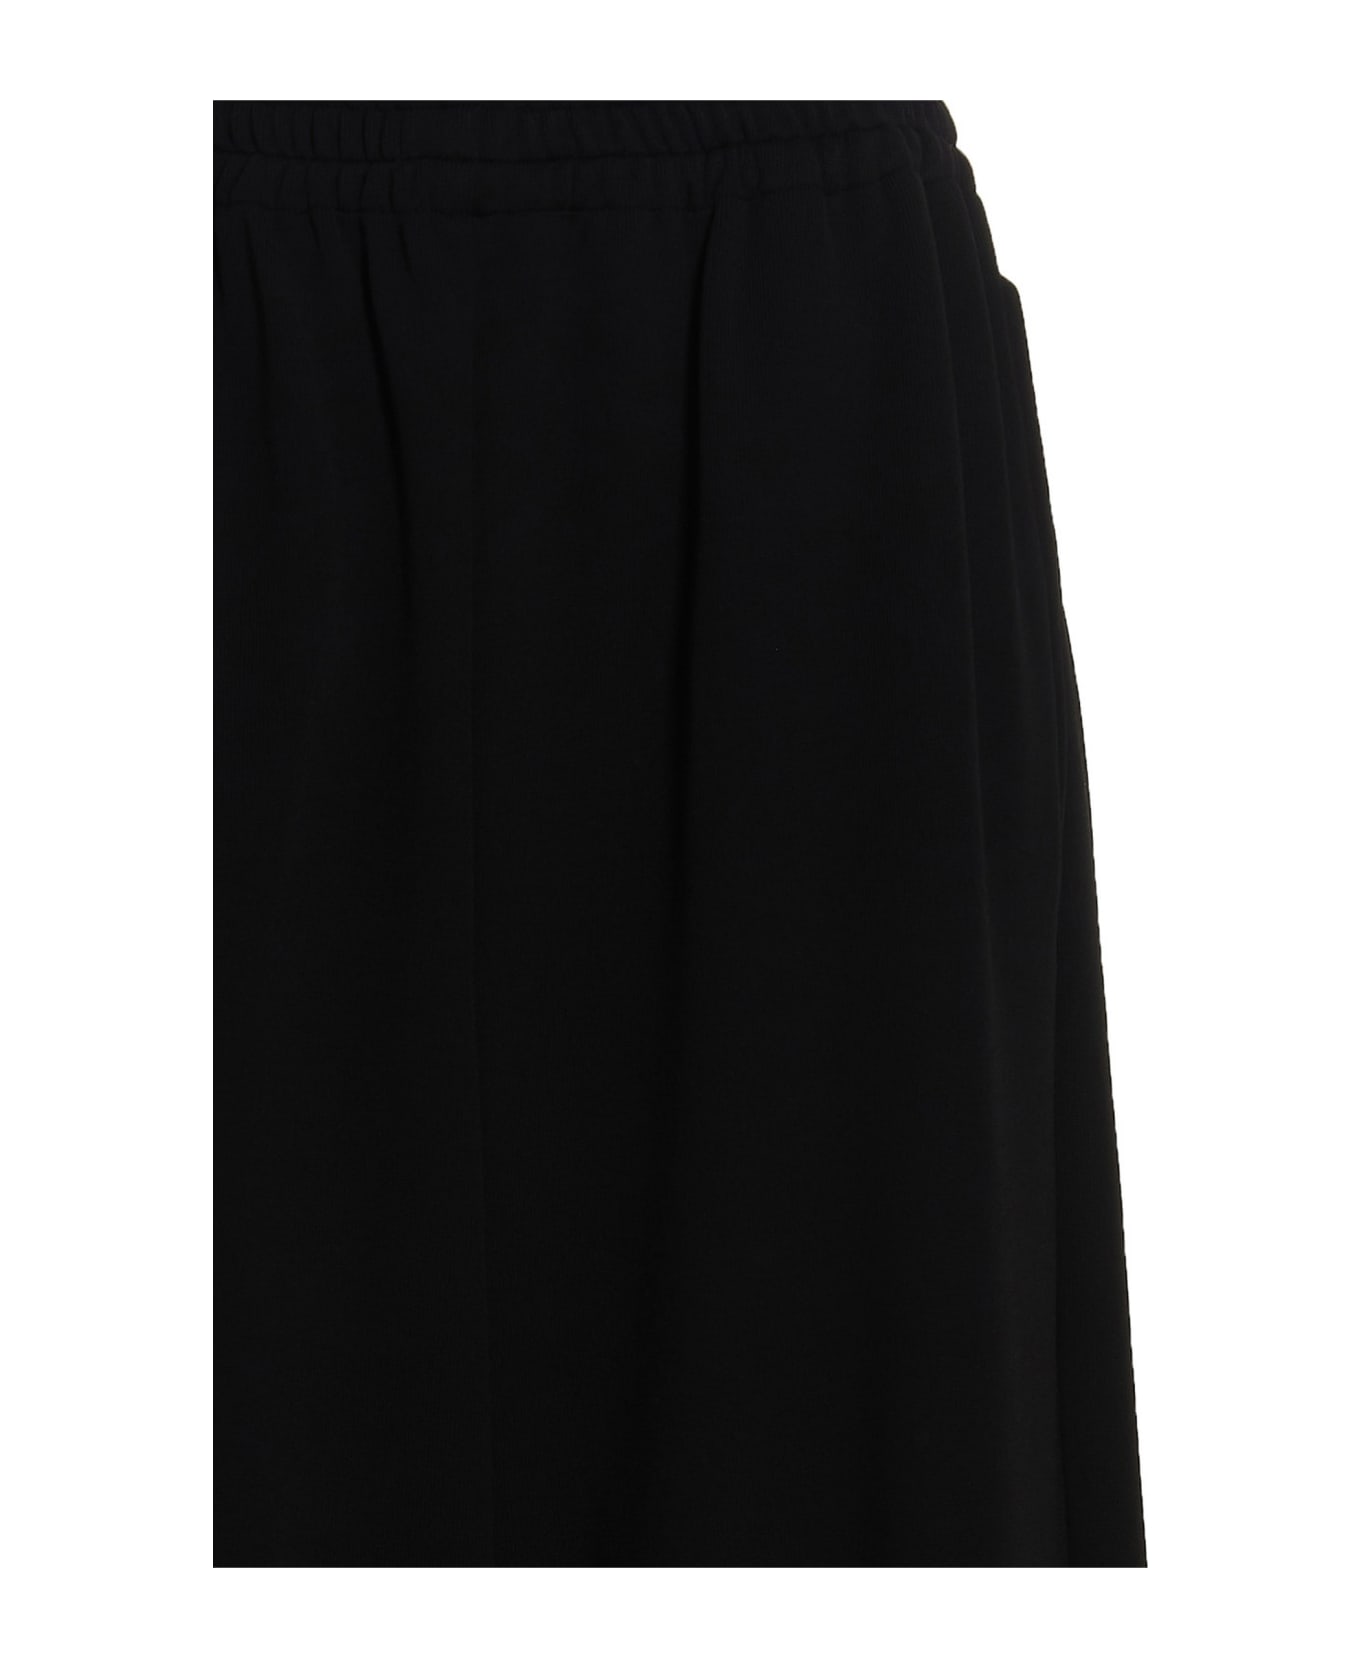 Balenciaga Loose Fit Viscose Trousers - BLACK ボトムス